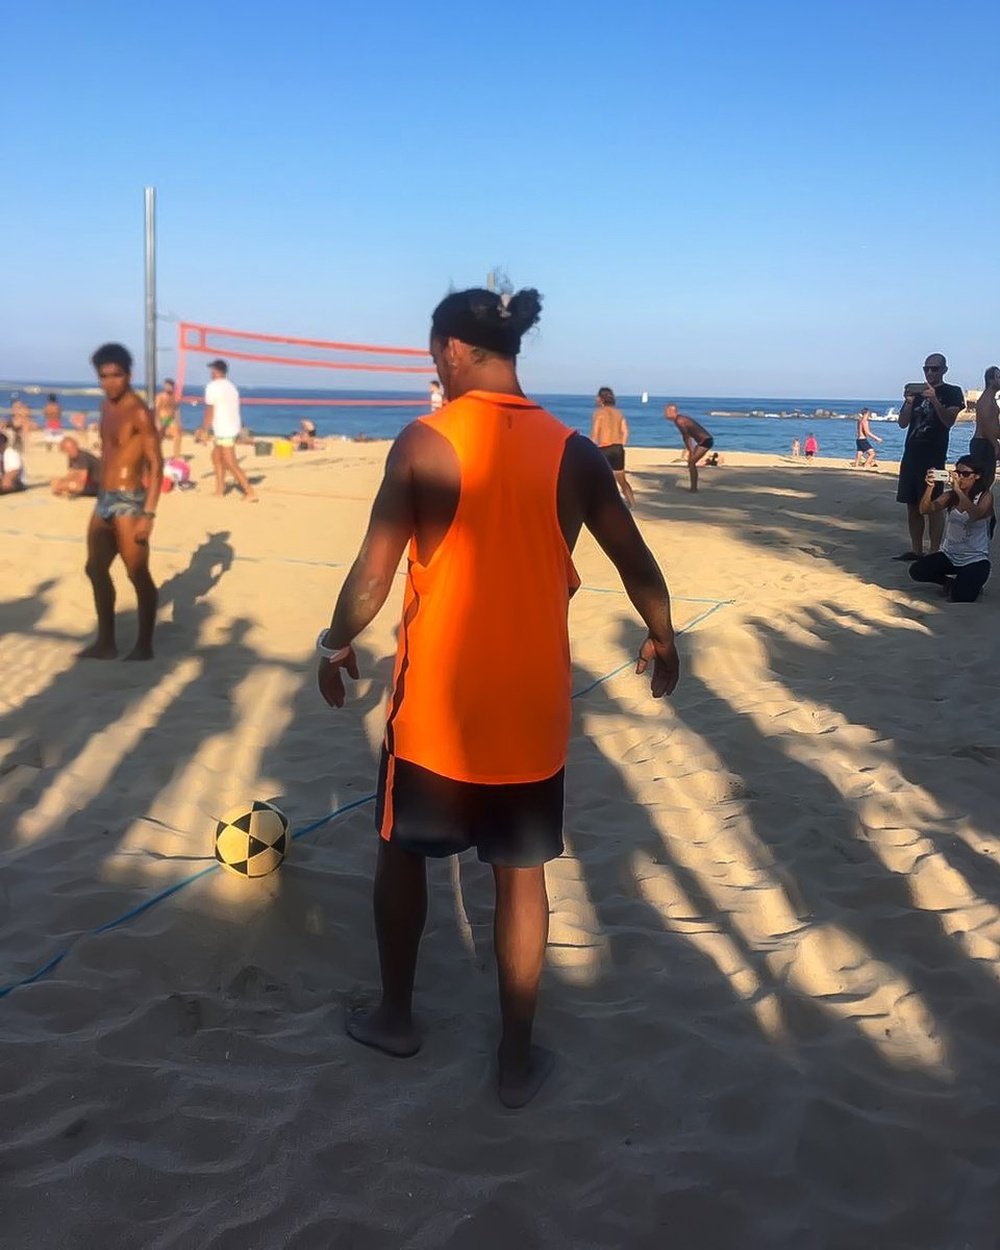 El ex futbolista brasileño jugó con un balón en una playa de Barcelona. Twitter